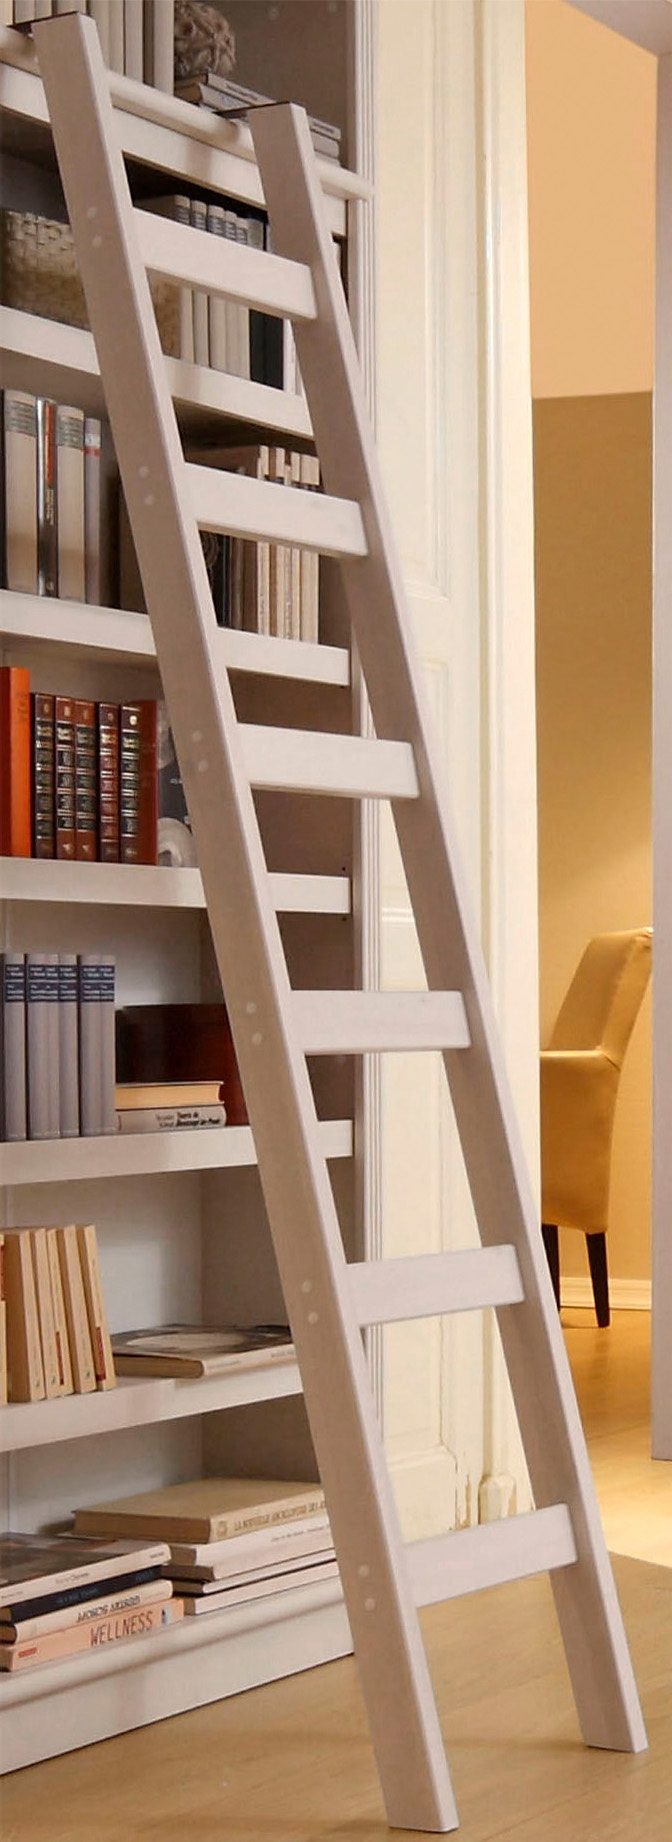 home affaire ladderrek soeren van massief grenen, hoogte 190 cm, functioneel design wit